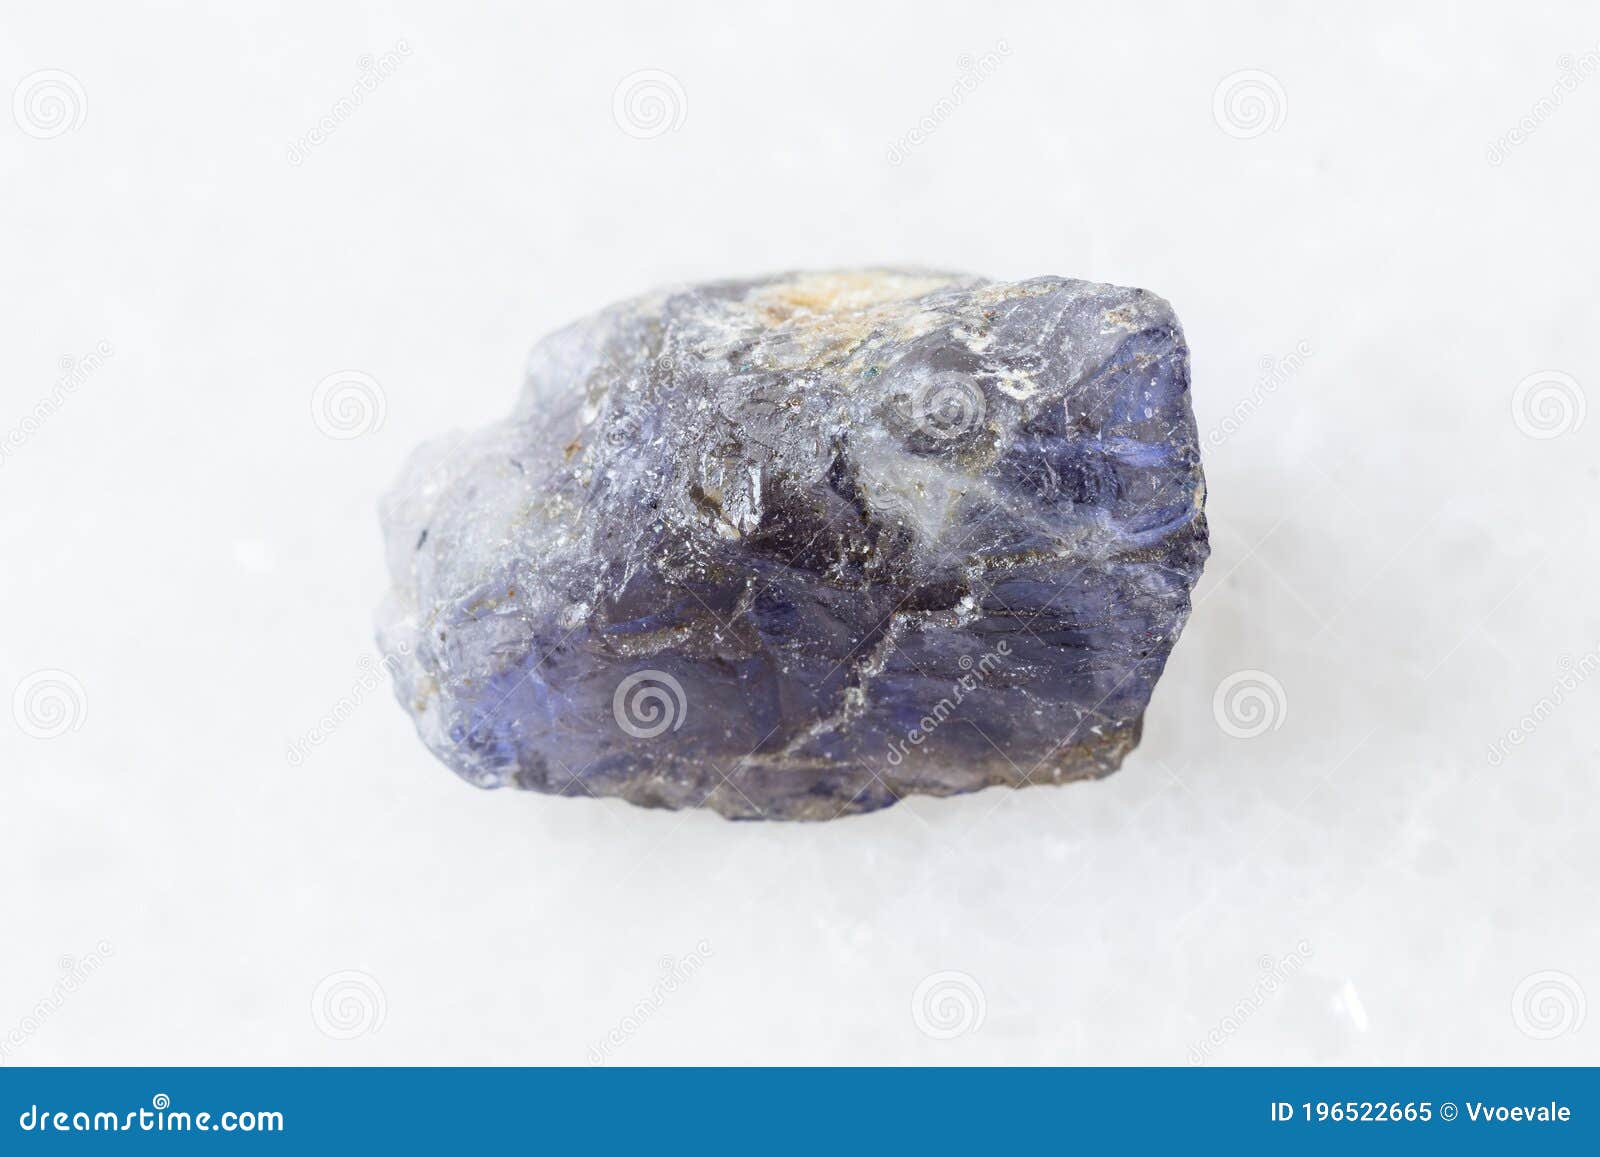 zeewier stad Generator Ruw Eiolietkristal Van Cordieriet Op Witte Marmer Stock Afbeelding - Image  of kristallijn, rots: 196522665